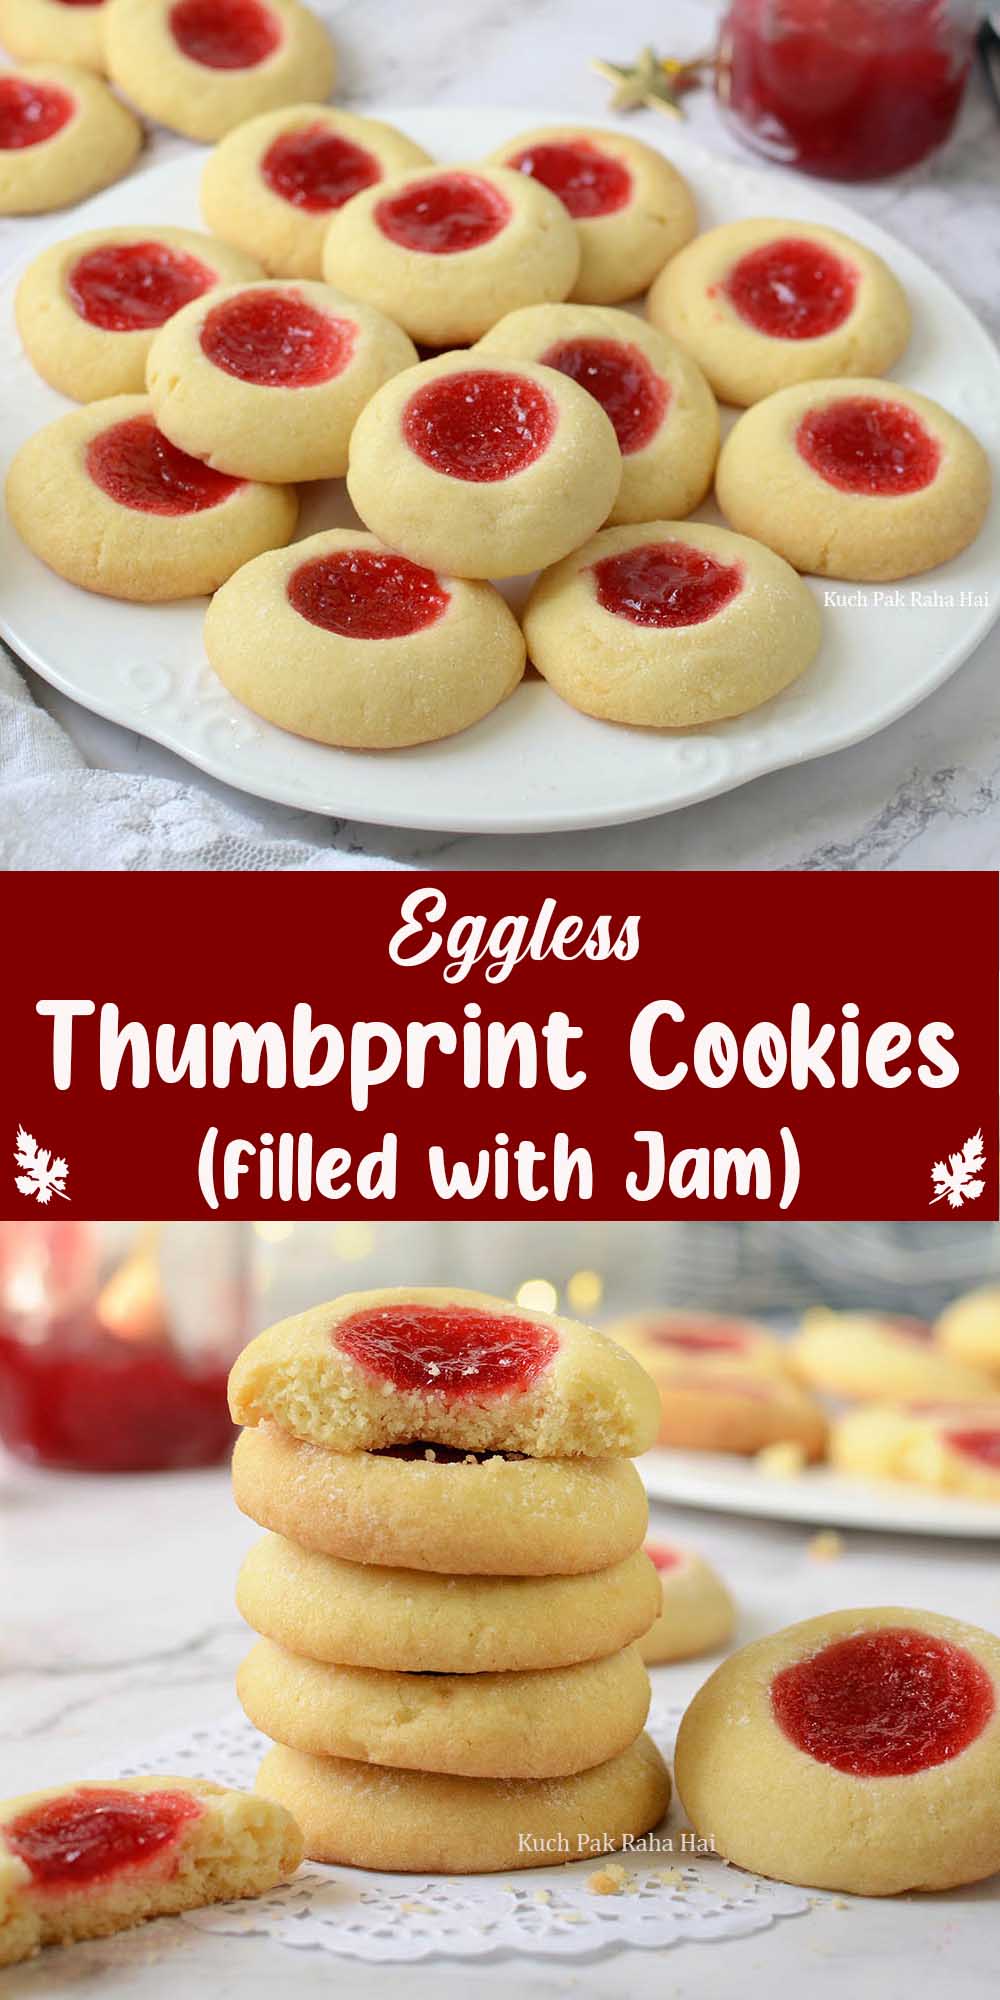 Eggless Jam filled thumbprint cookies